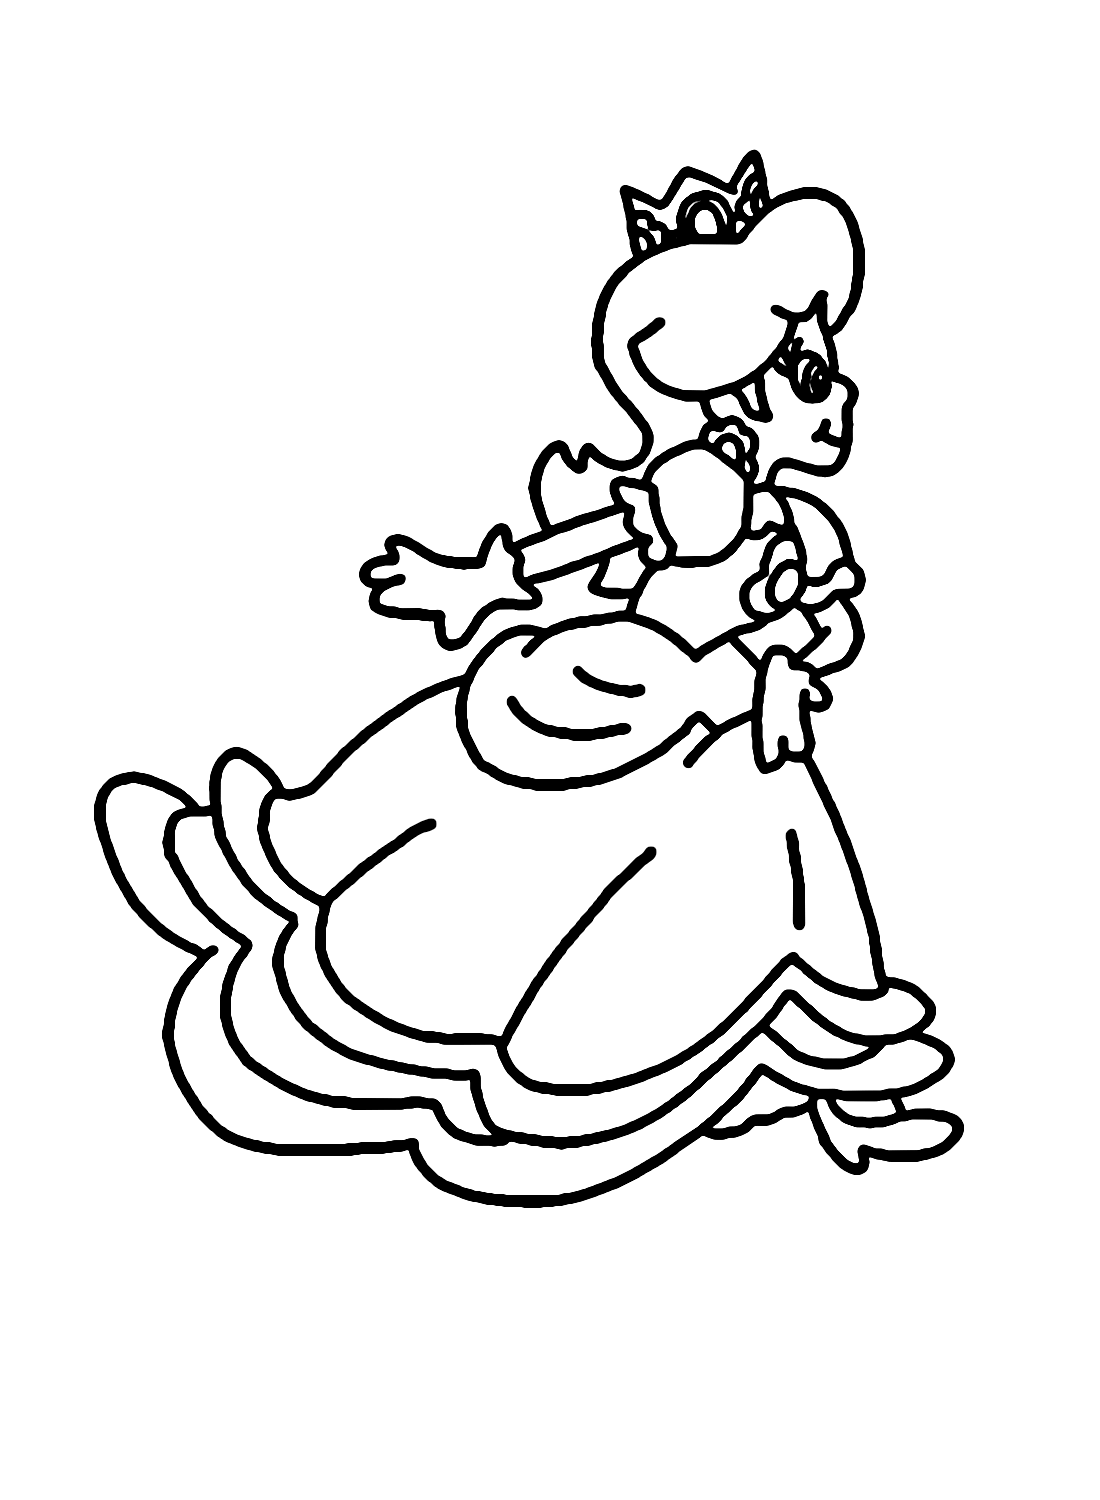 Princess Daisy Running Coloring Page